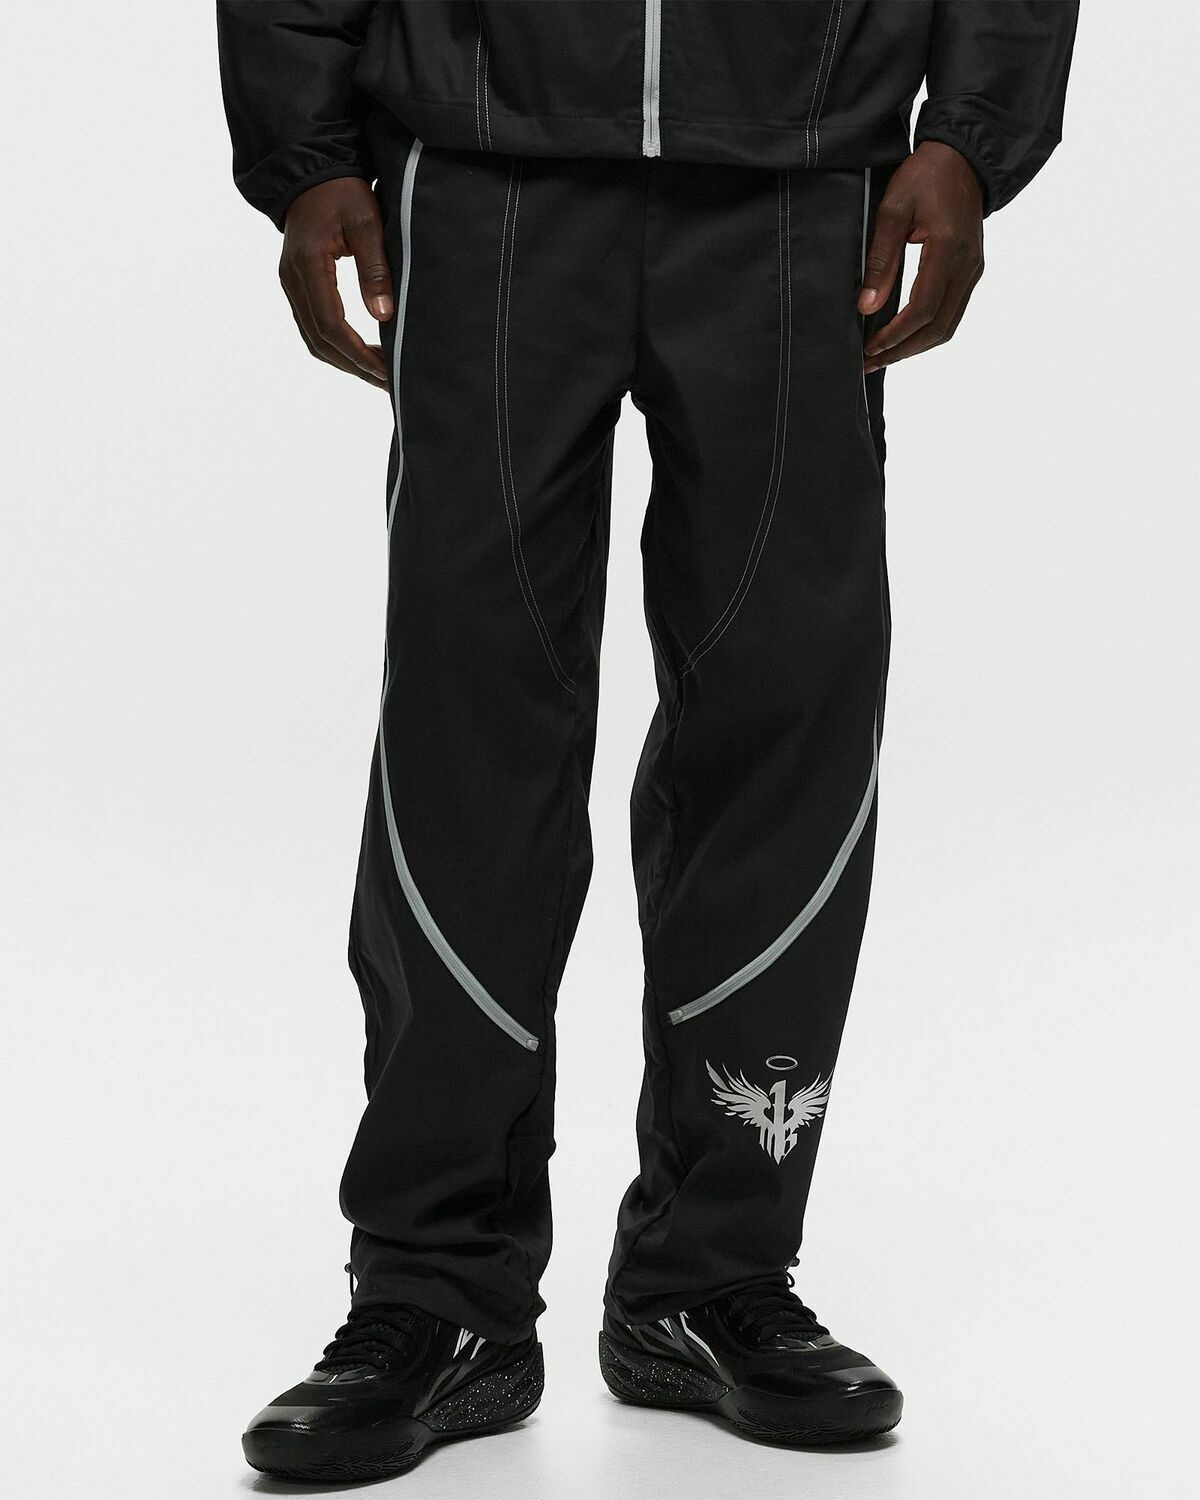 Puma Essential Plus Camo Jogging Pants Mens | SportsDirect.com USA